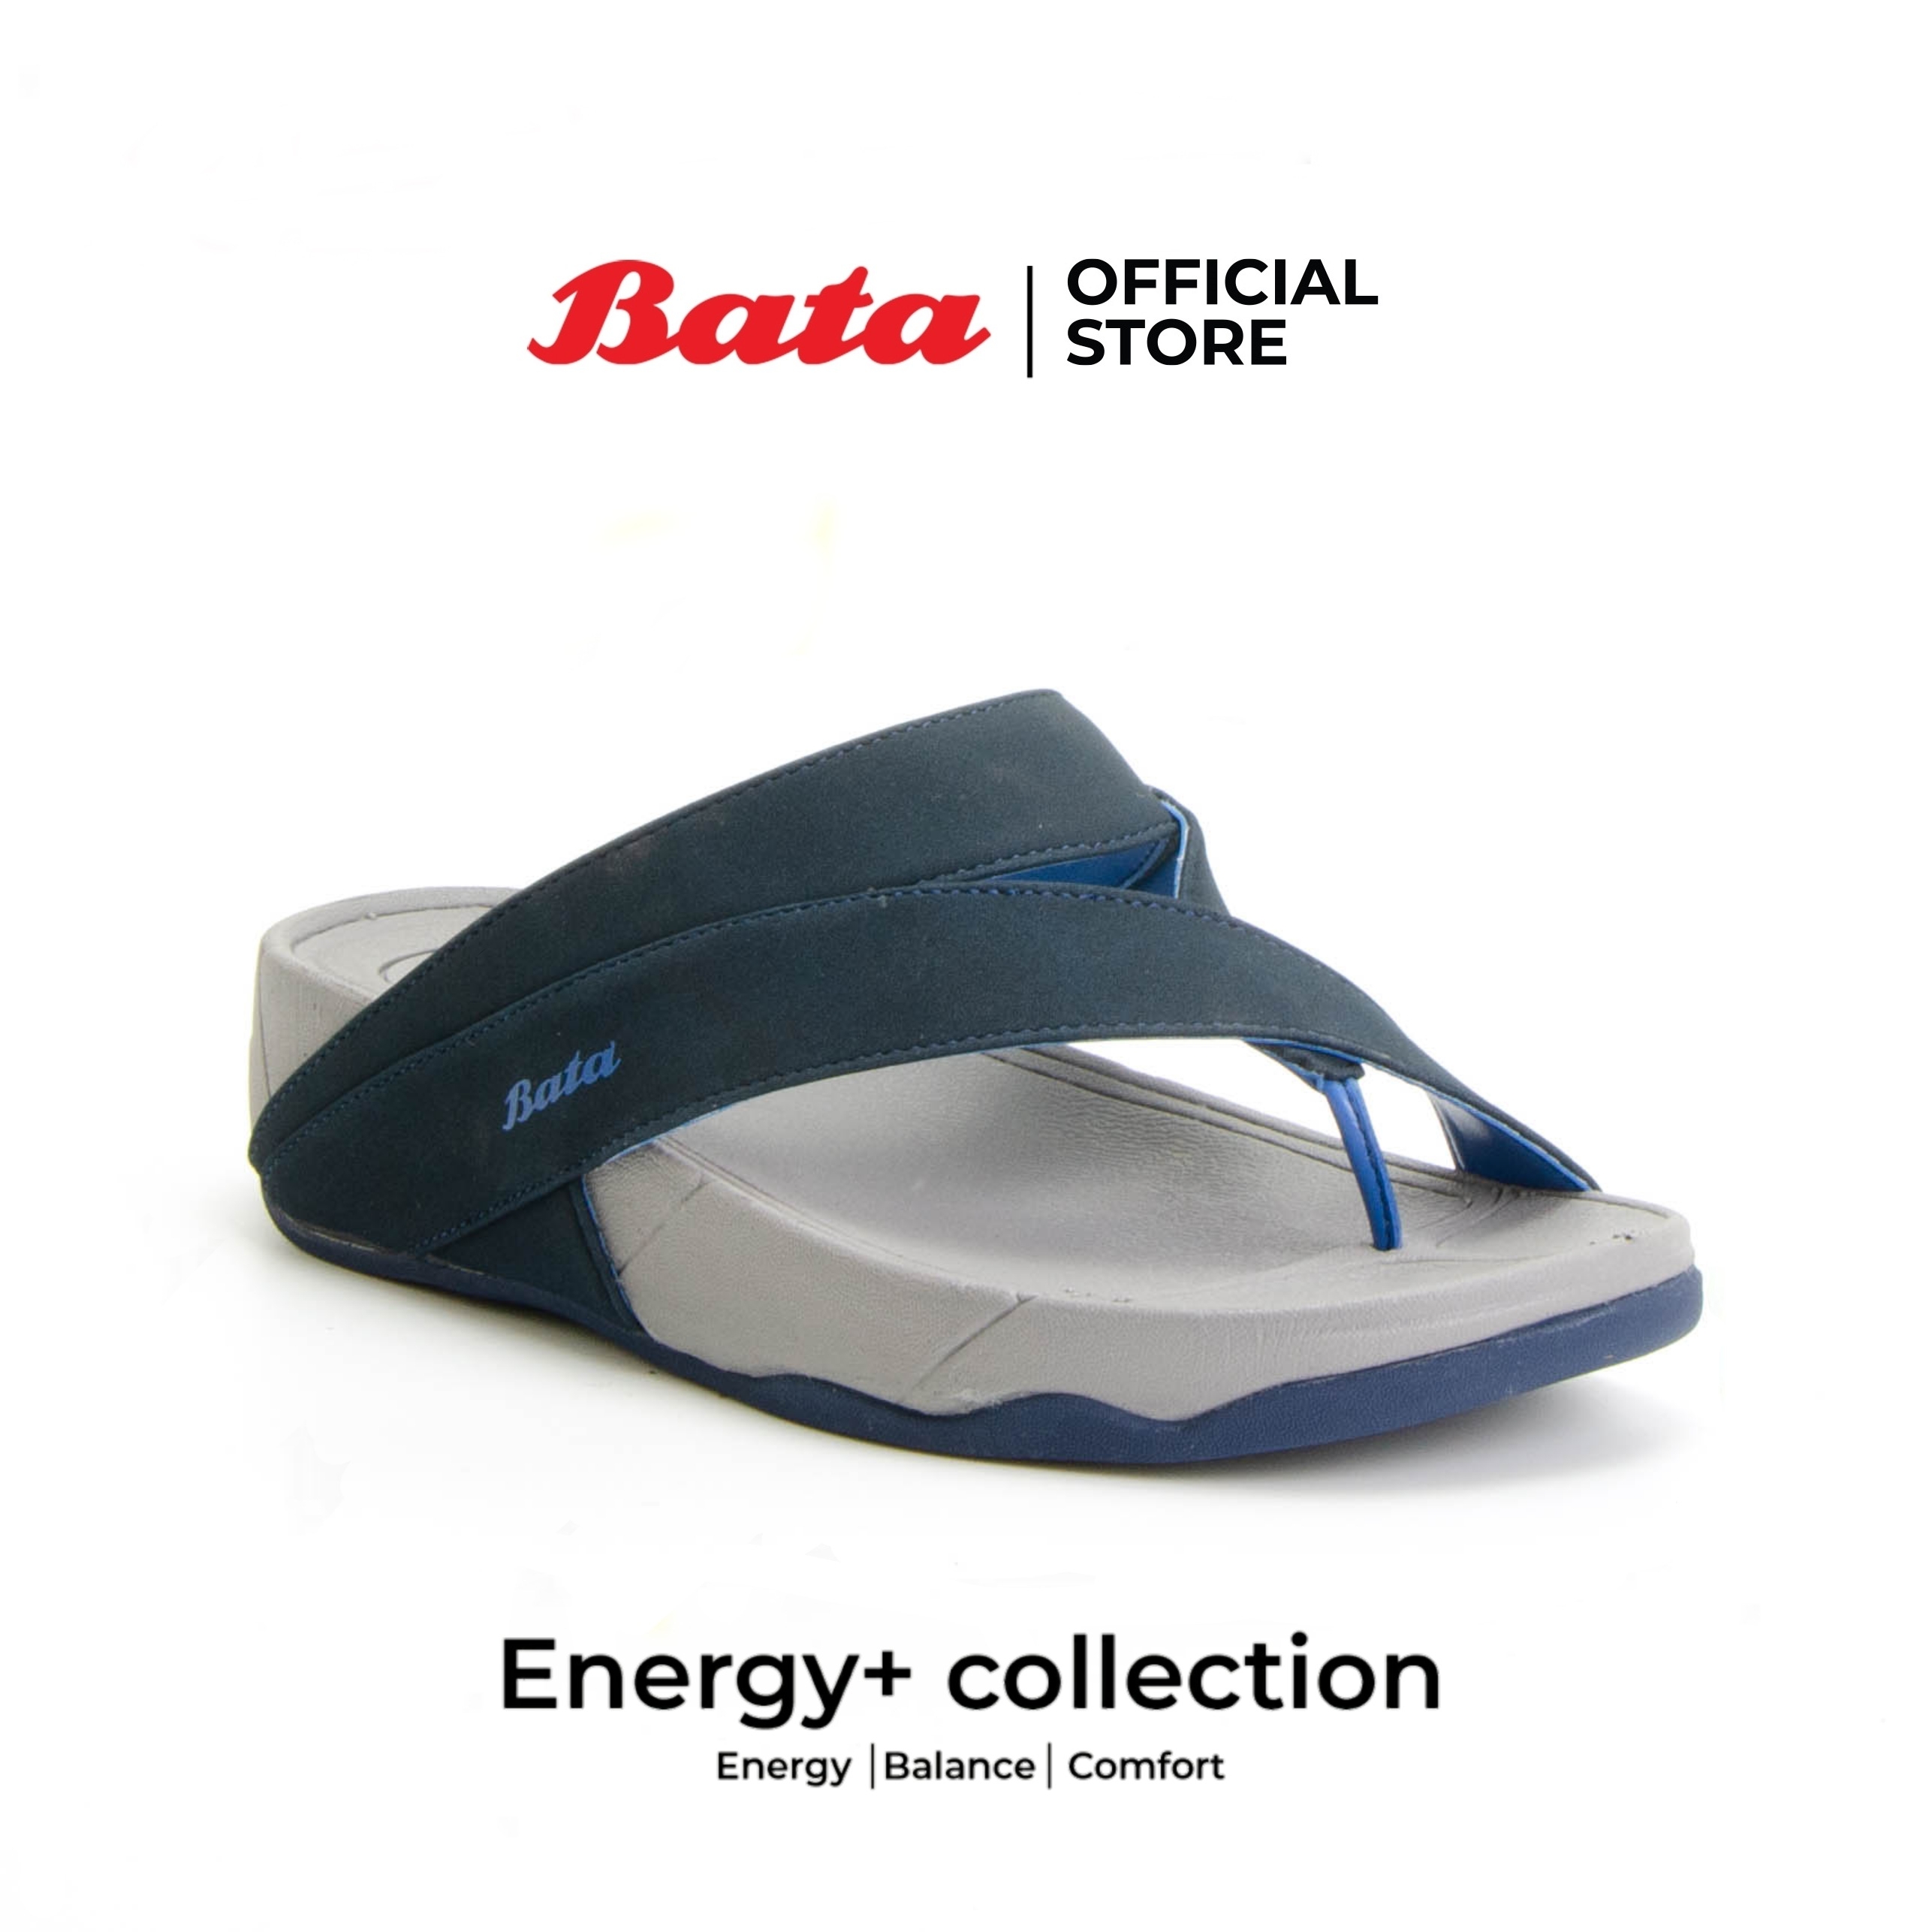 *Best Selling*  Bata Energy+ รองเท้าแตะลำลองแฟชั่น ผู้หญิง รองเท้าเพื่อสุขภาพ สีน้ำเงิน รหัส 4719342 Size 3-5 นุ่มสบาย